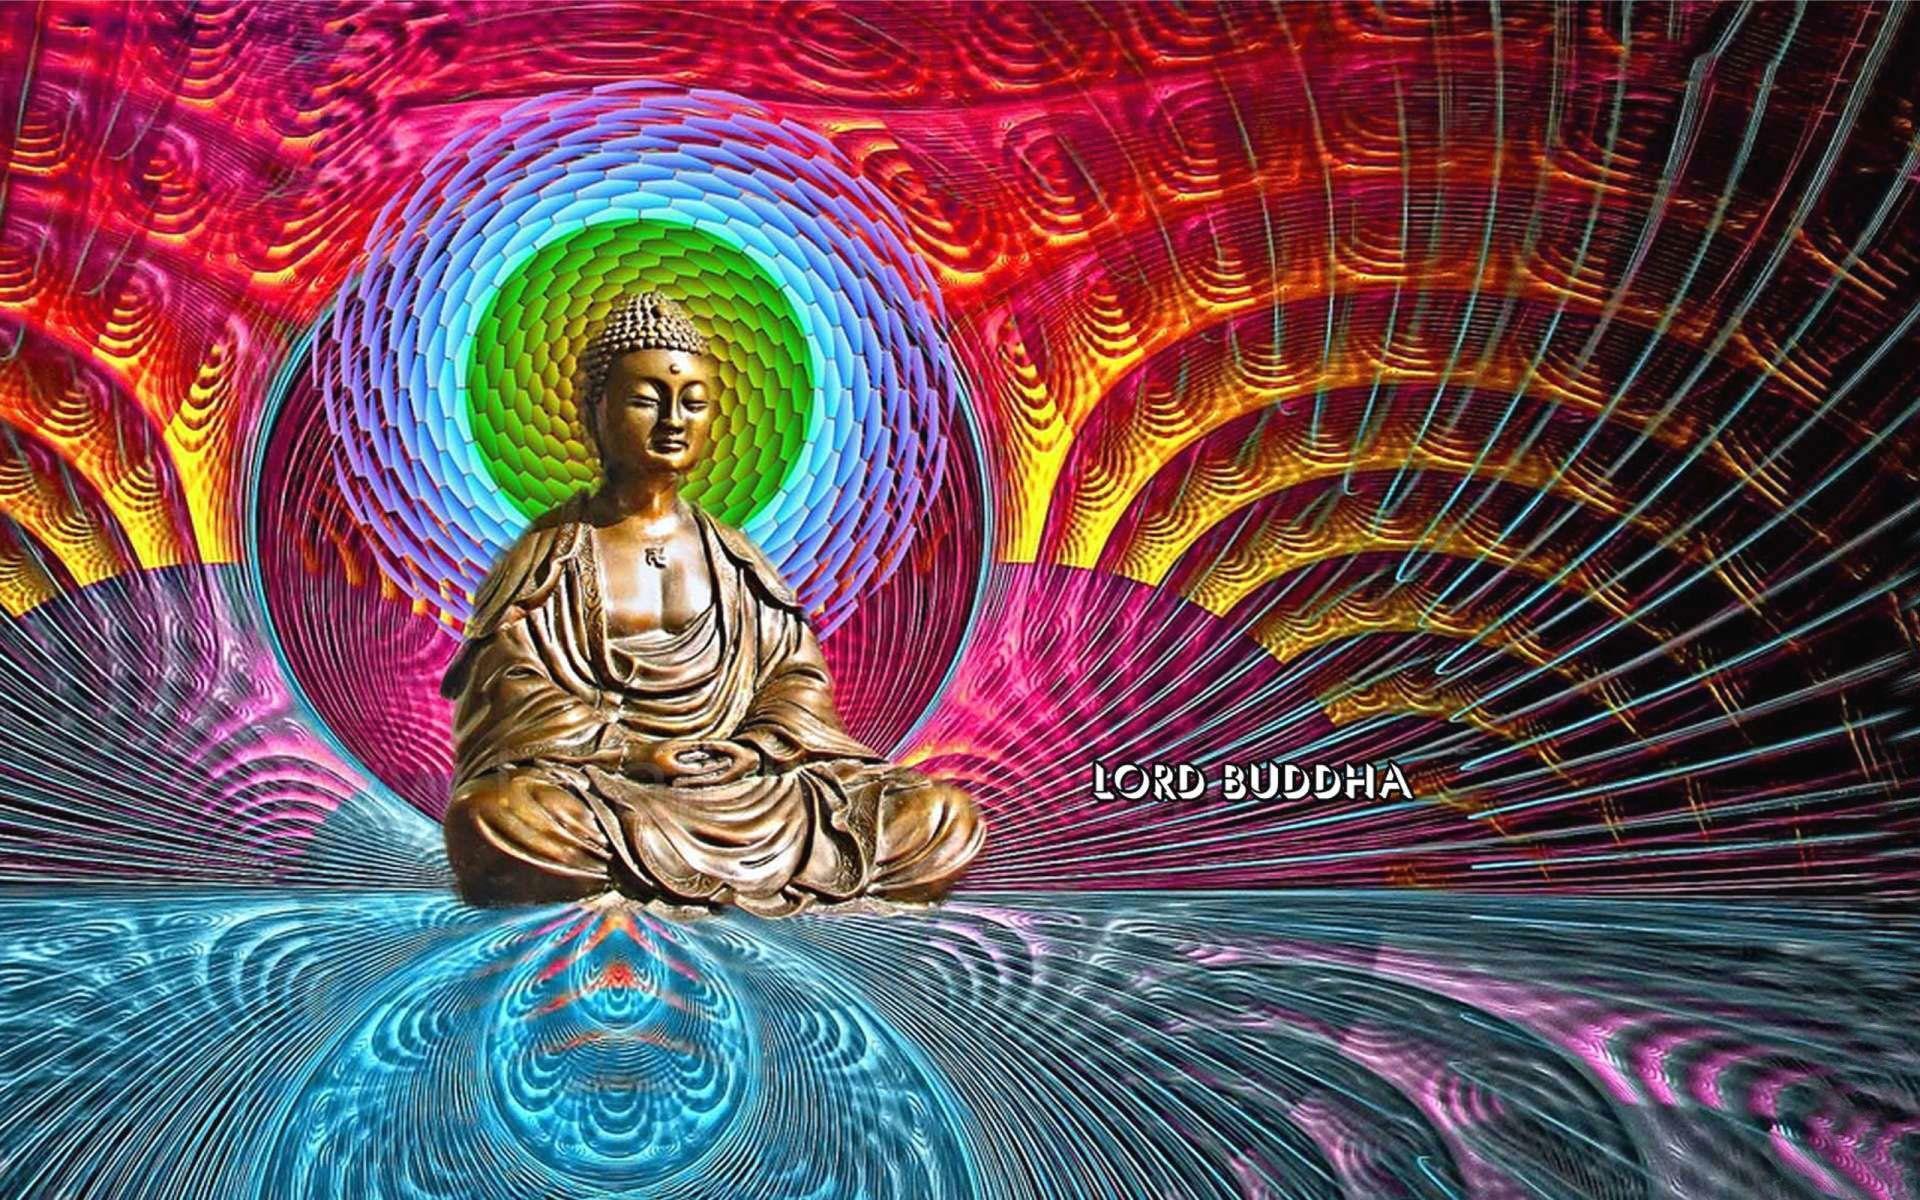 Gautam Buddha Wallpaper & image free download